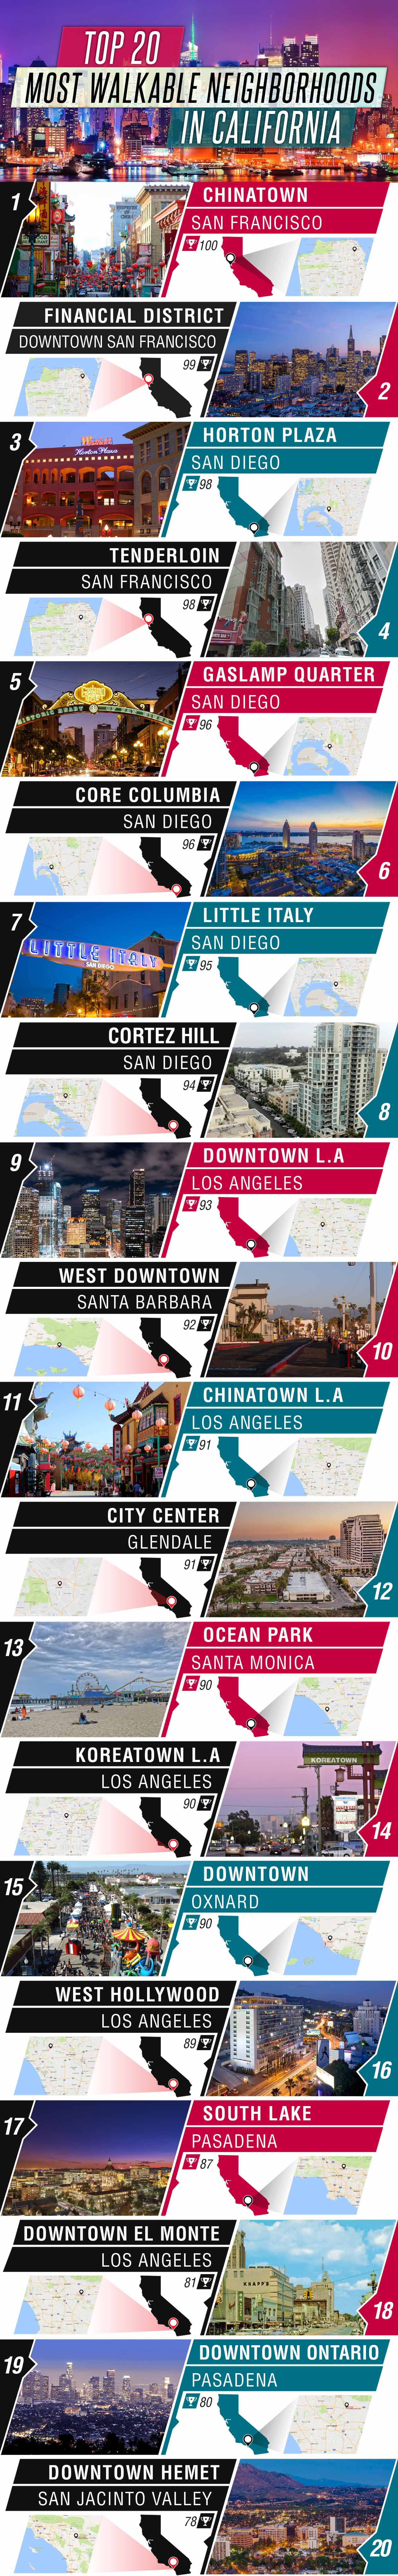 infographic-top-20-most-walkable-neighborhoods-in-california-content